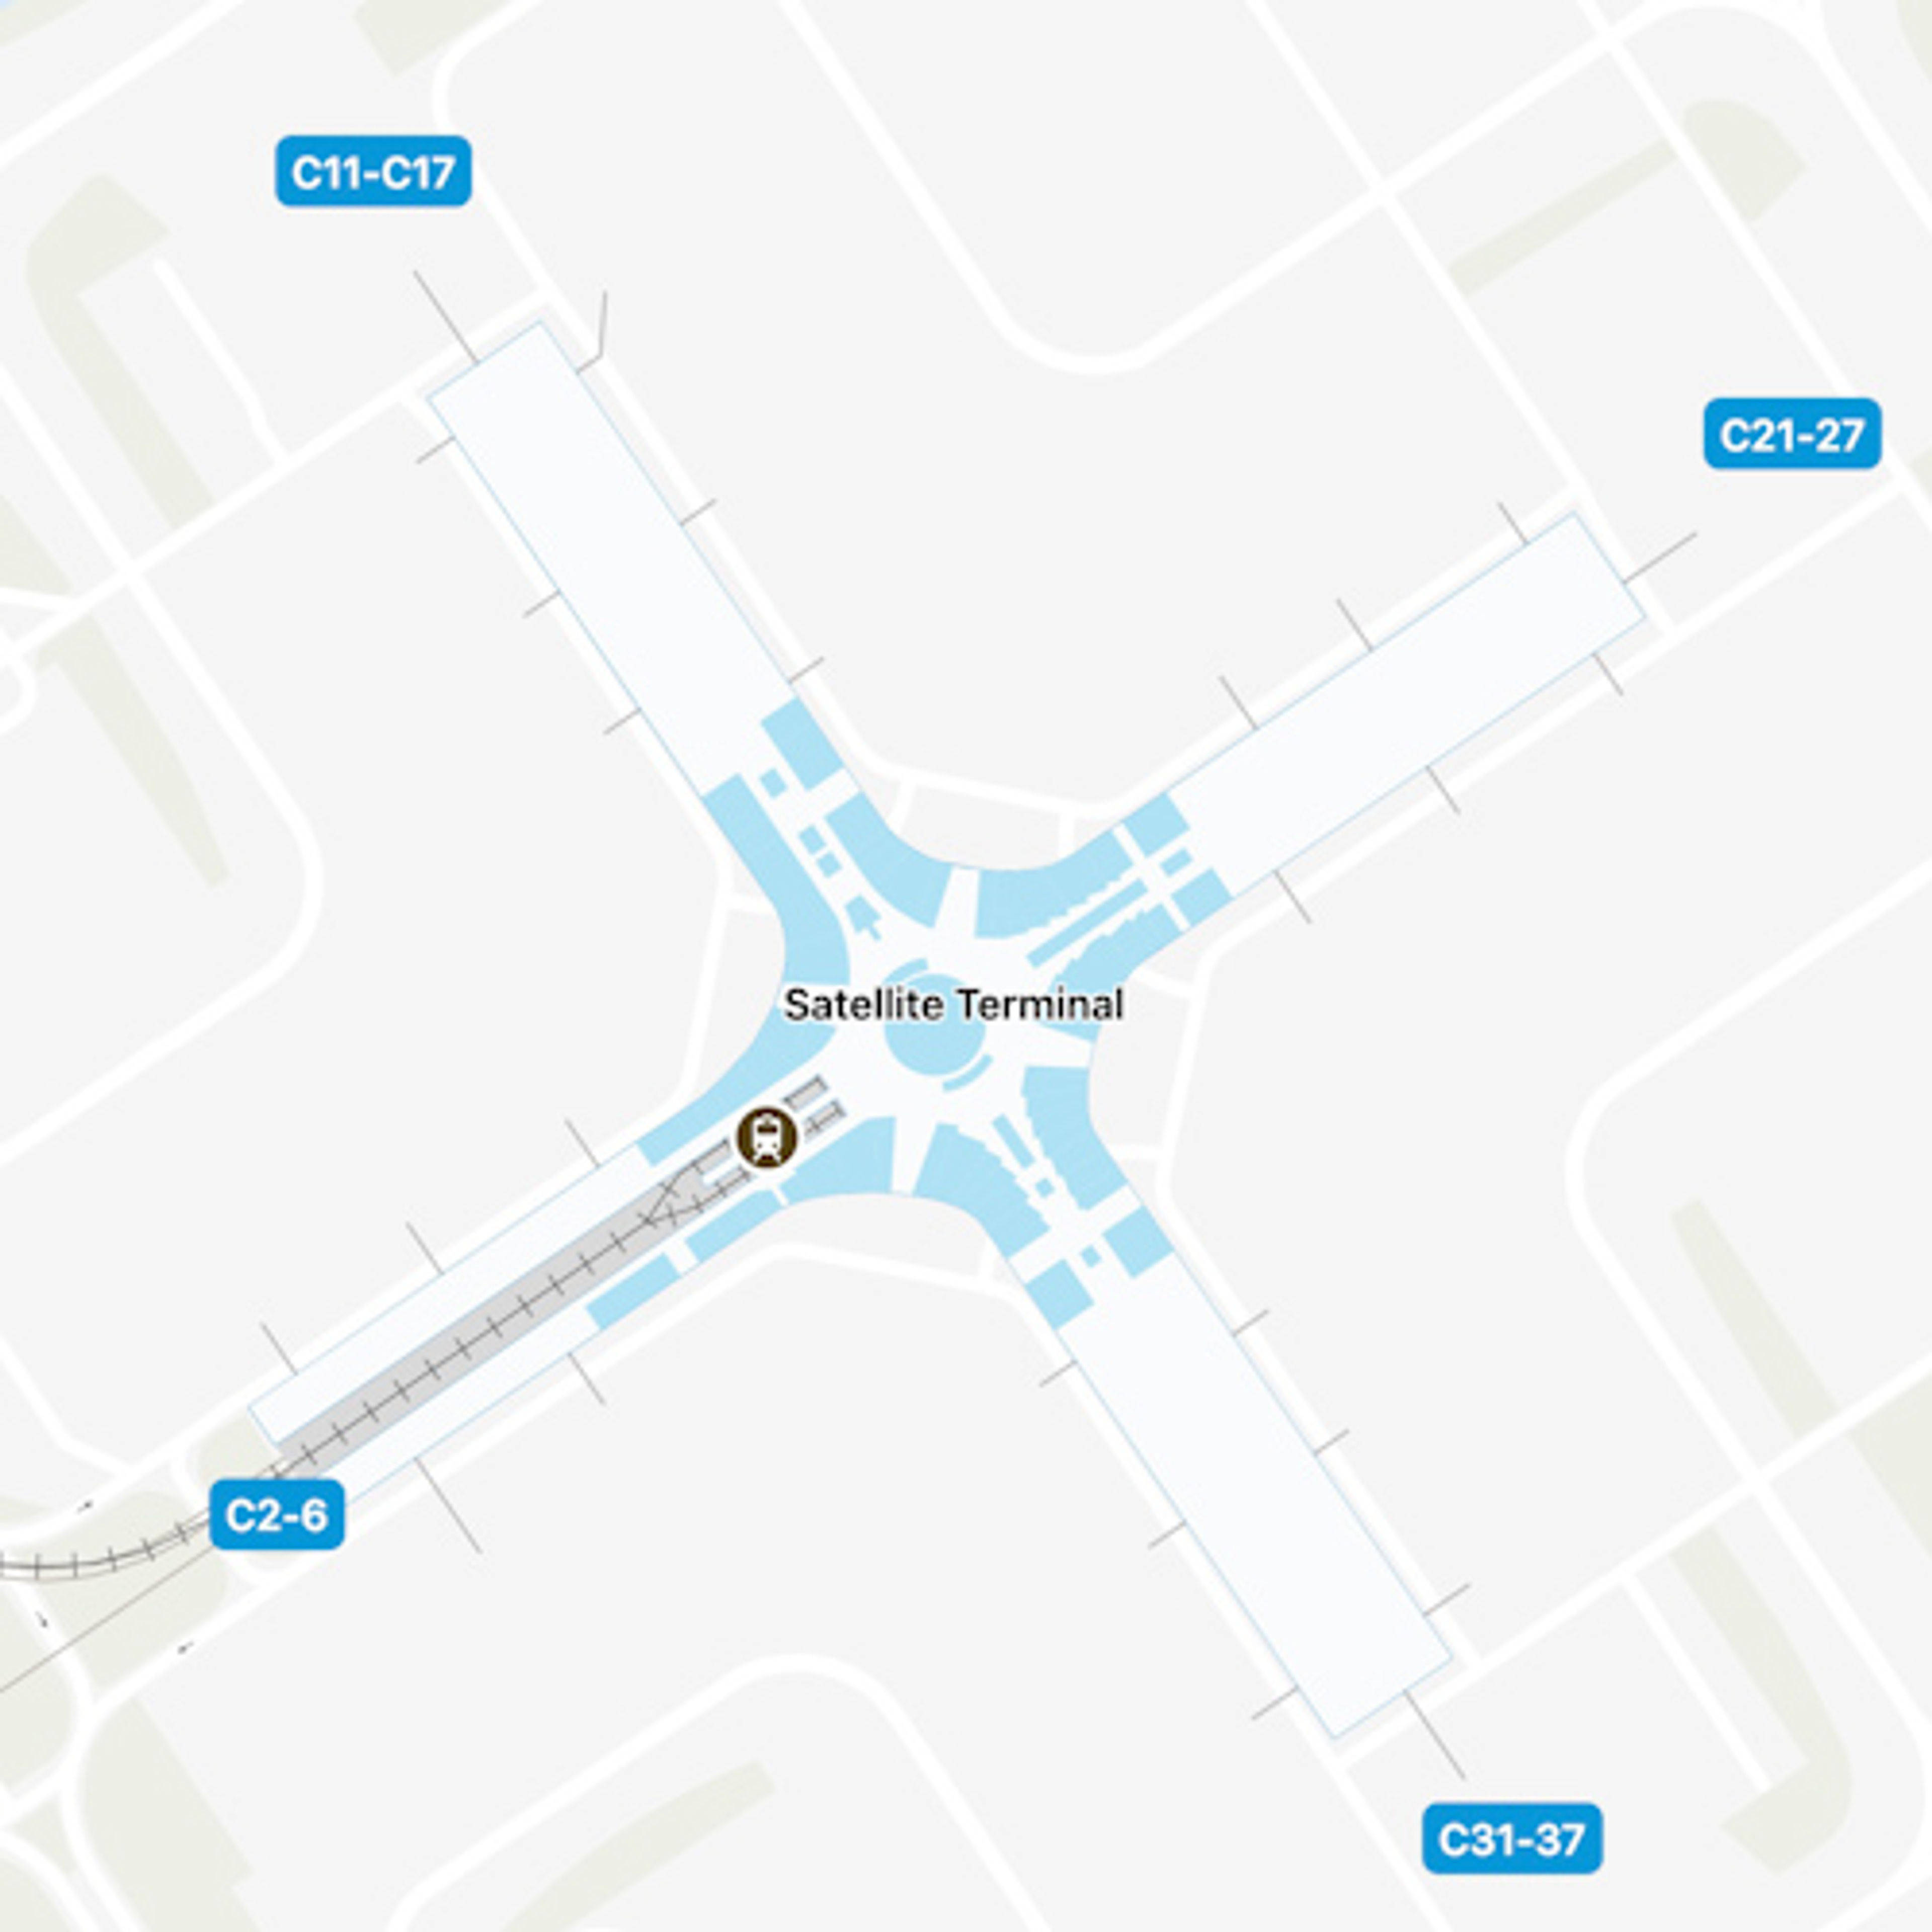 Selangor Airport Satellite Terminal Map